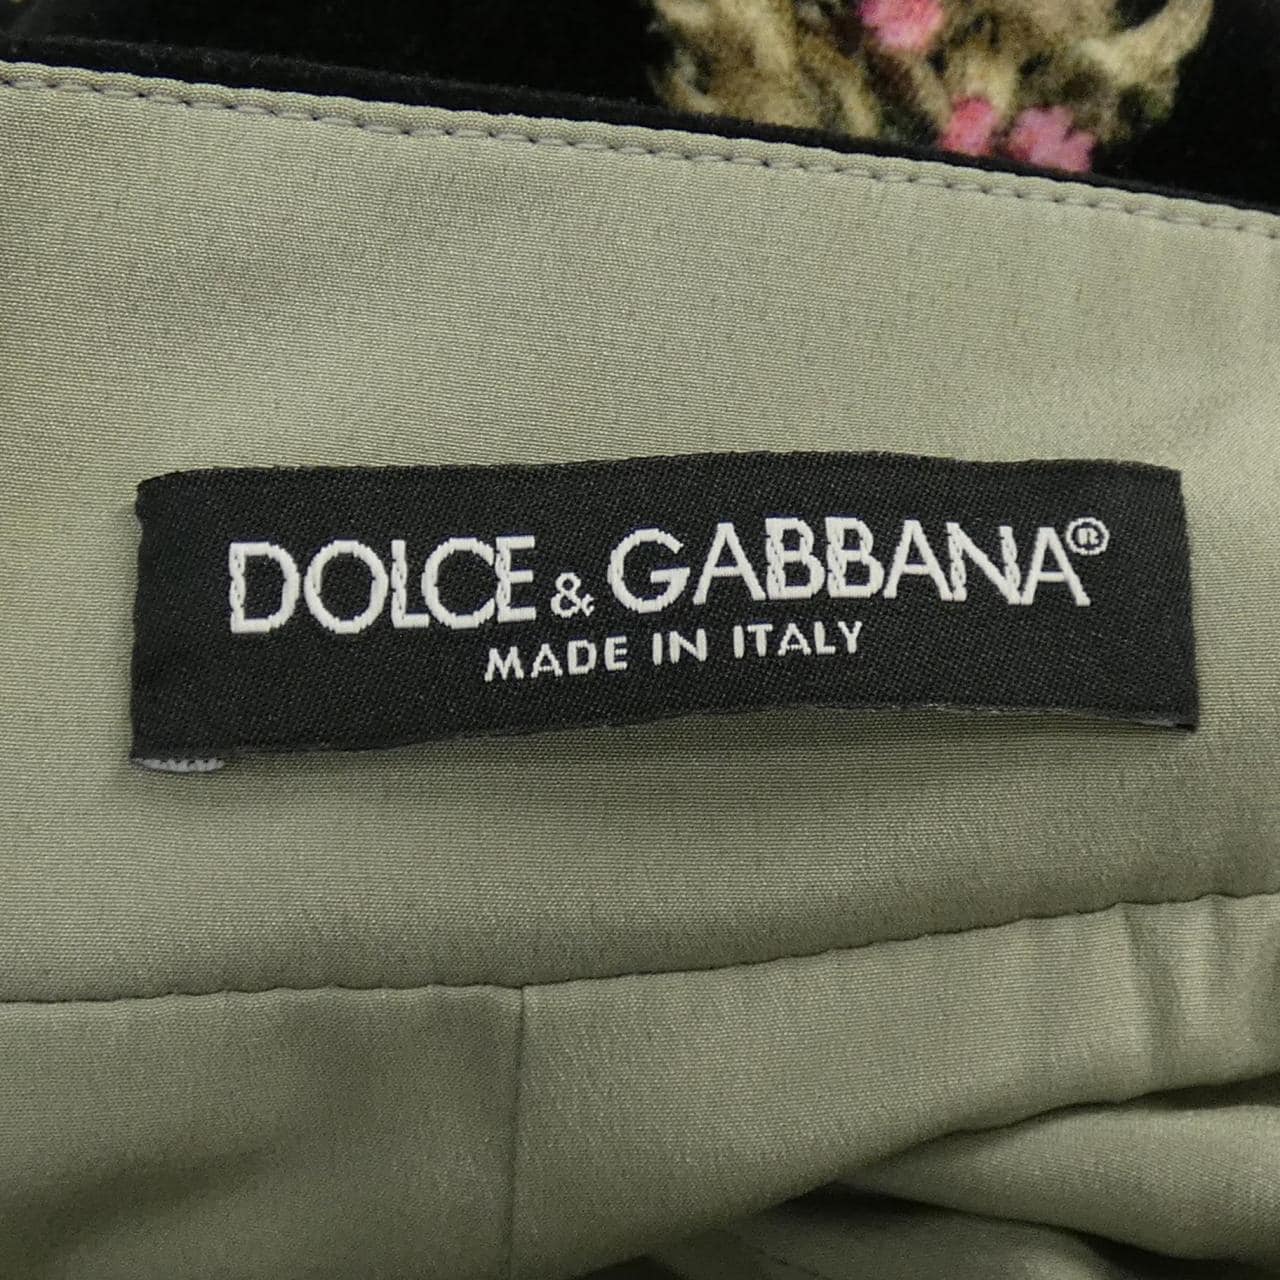 DOLCE&GABBANA & Gabbana skirt